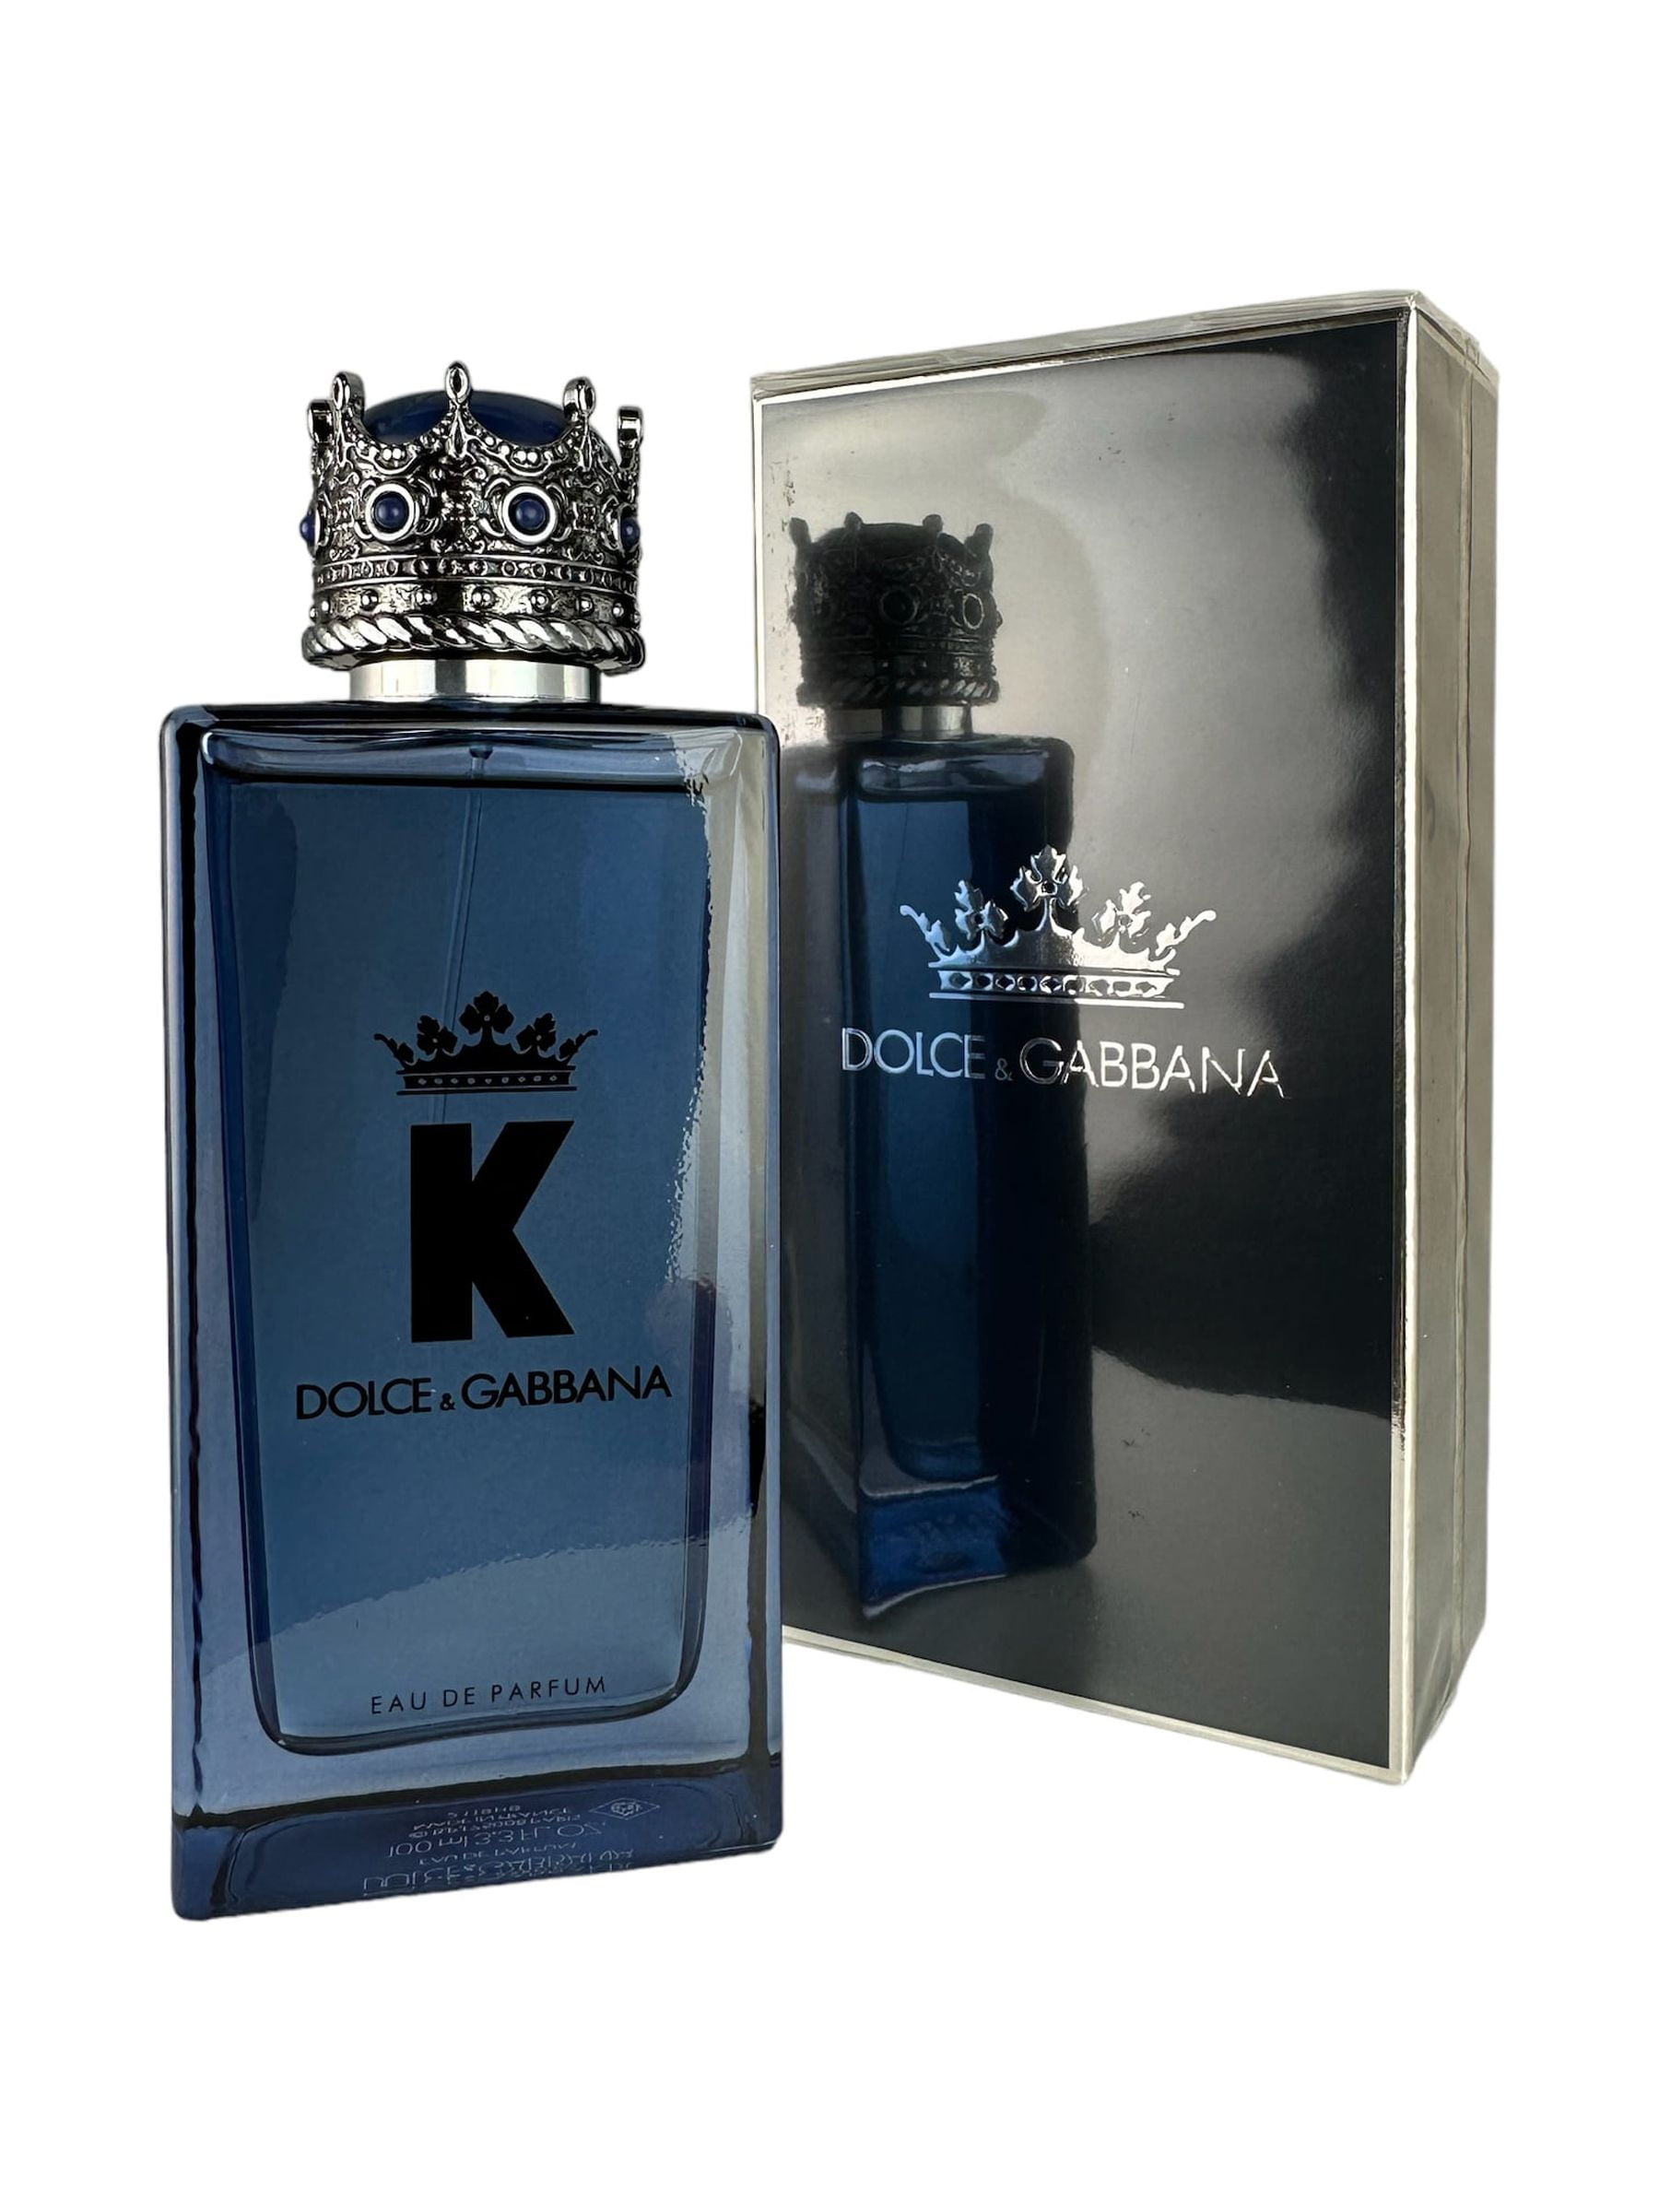 Dolce & Gabbana King Men Edt 100Ml